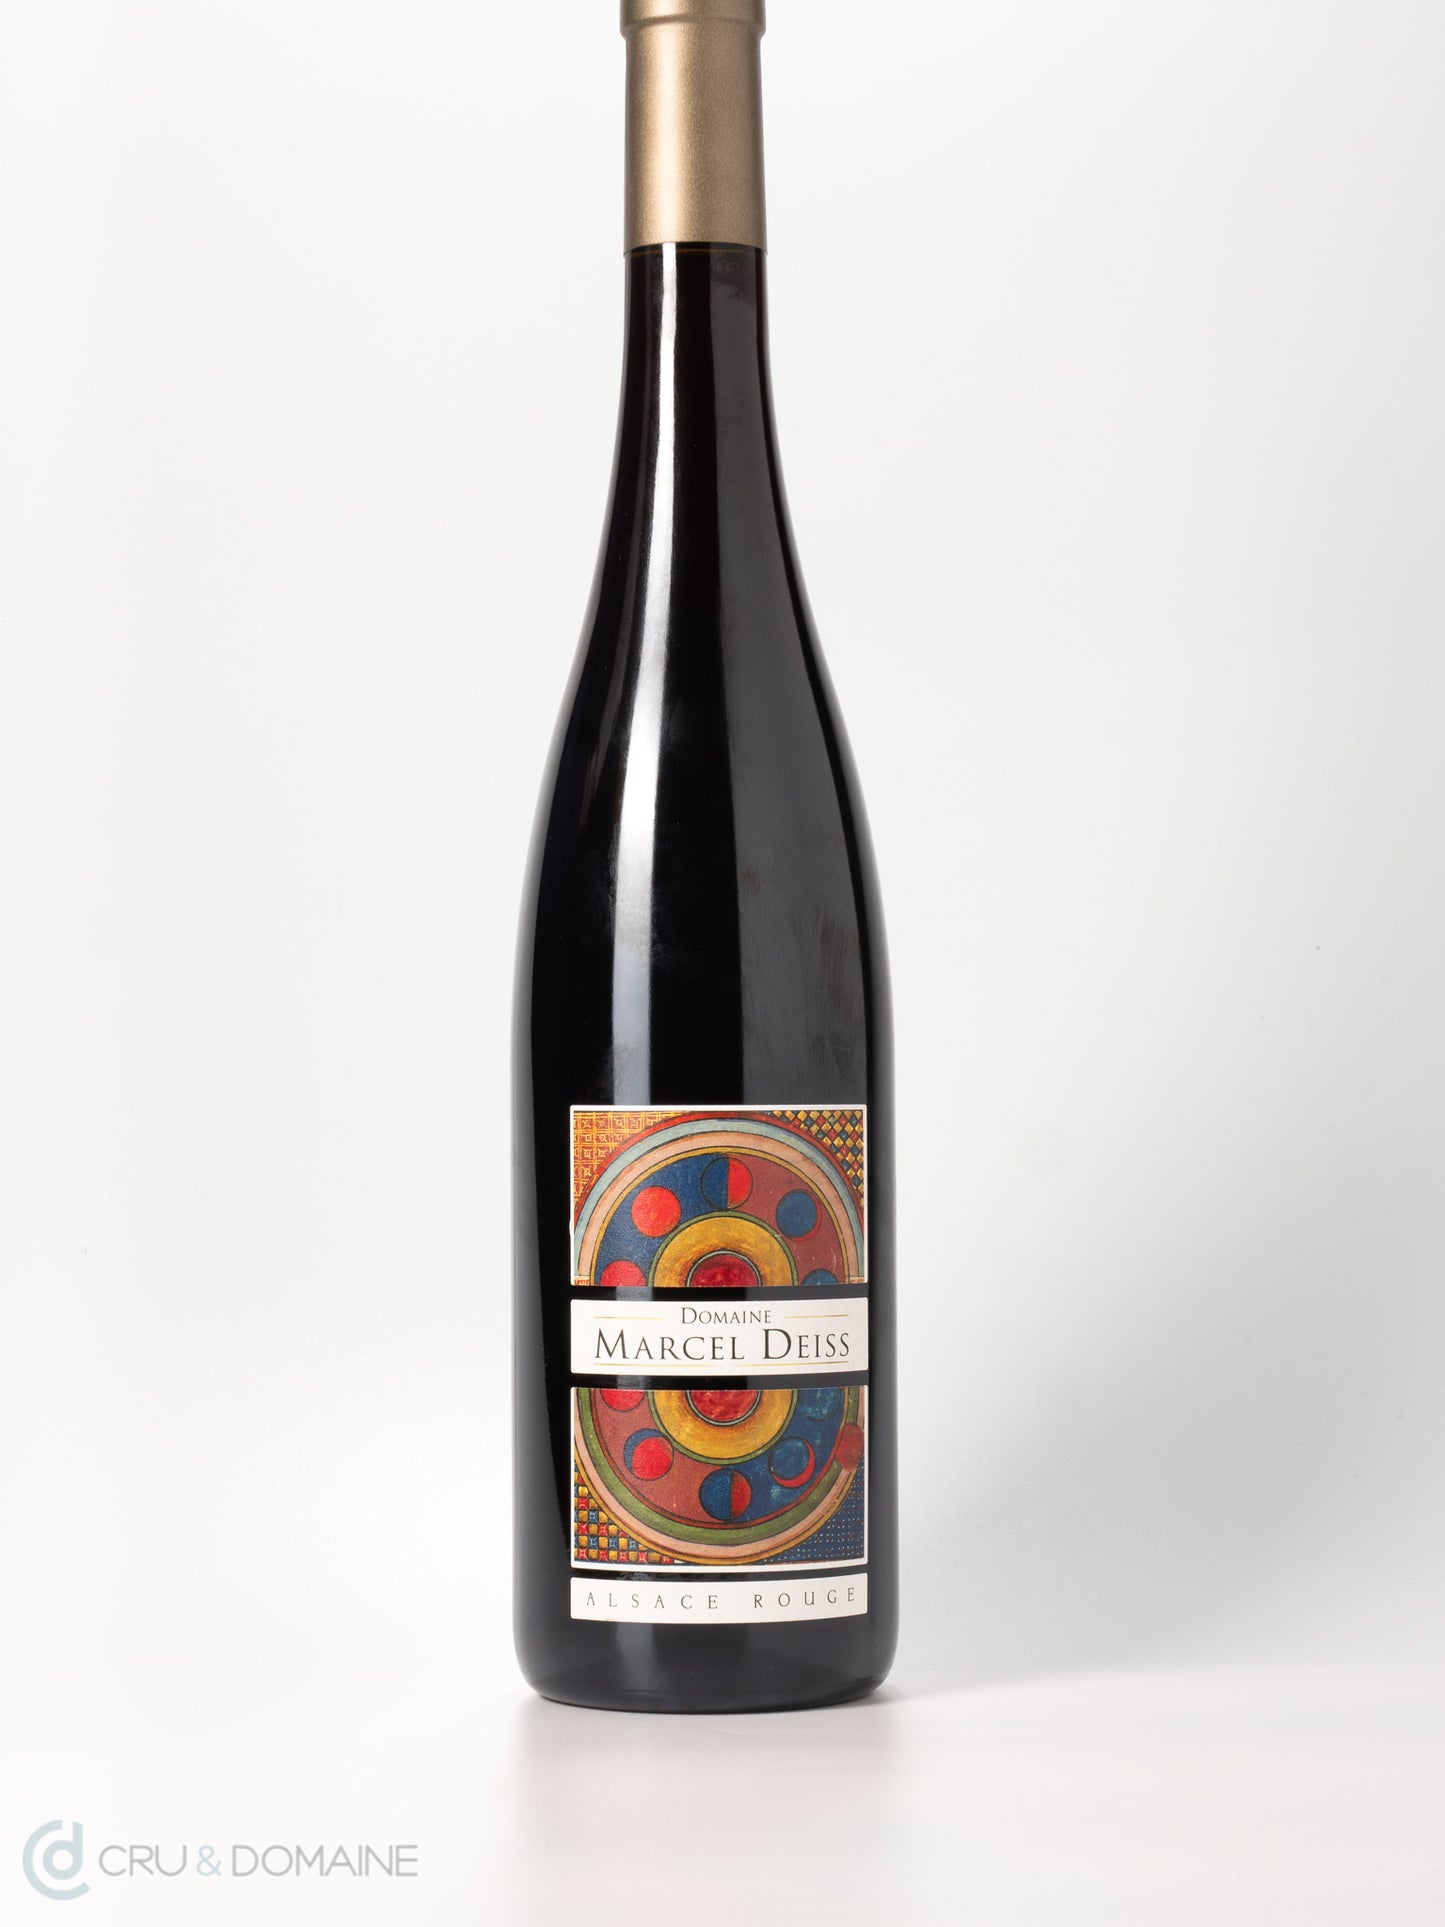 2019 Domaine Marcel Deiss, Alsace Rouge, Pinot Noir, Alsace, France